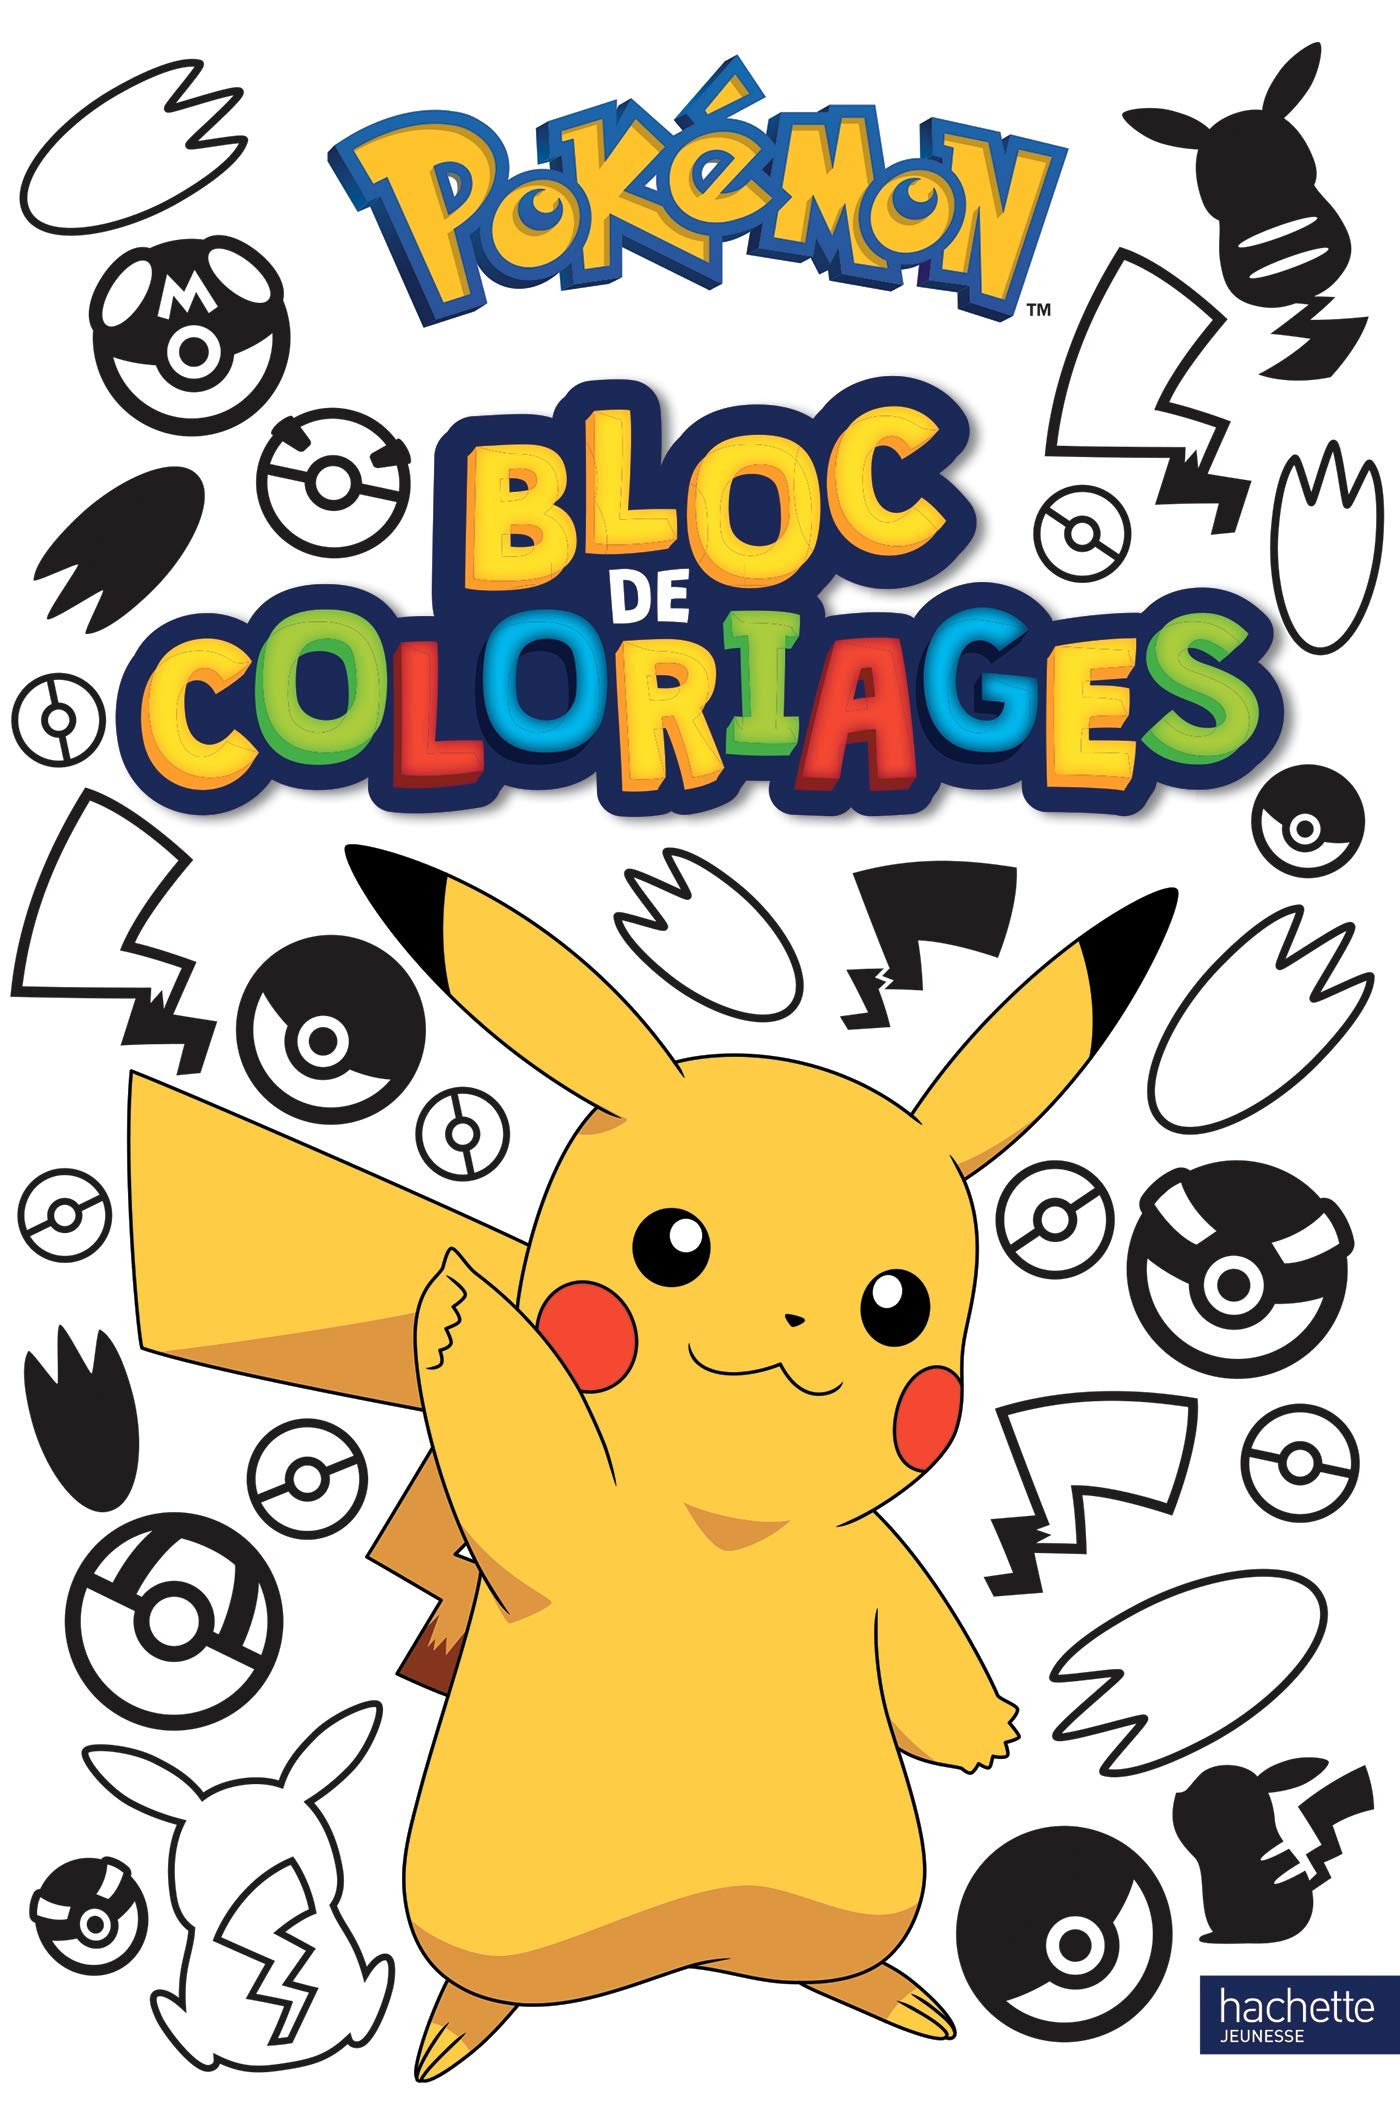 Pokémon : bloc de coloriages